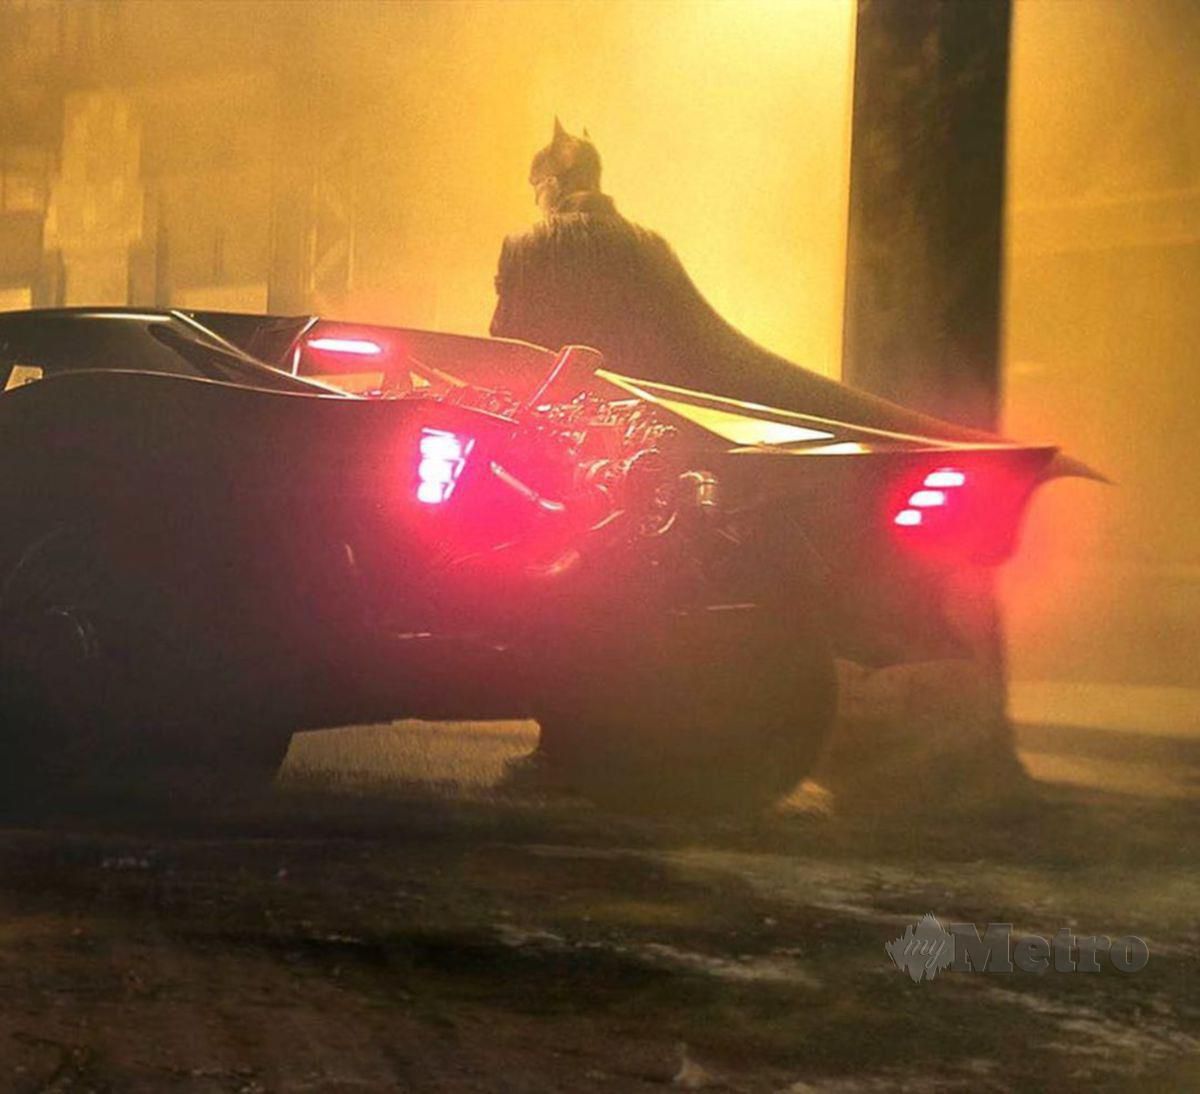 KETEPI Dominic Toretto, Batman kini mendominasi.